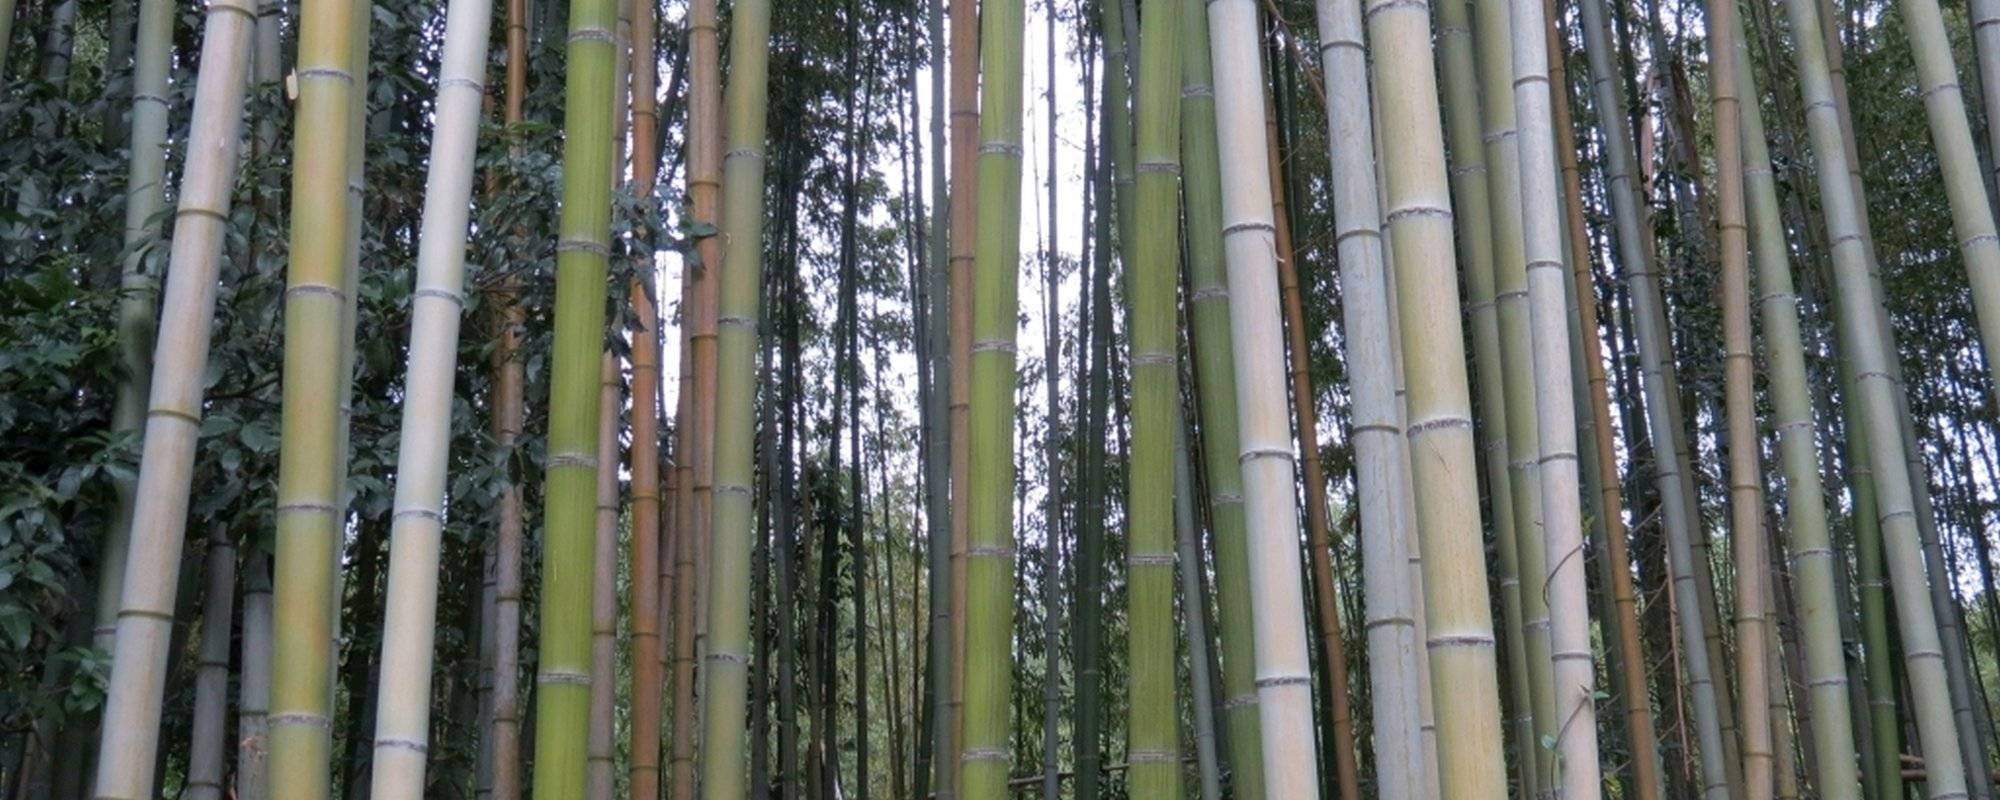 Magic bamboo forest in Arashiyama (Kyoto) in Japan